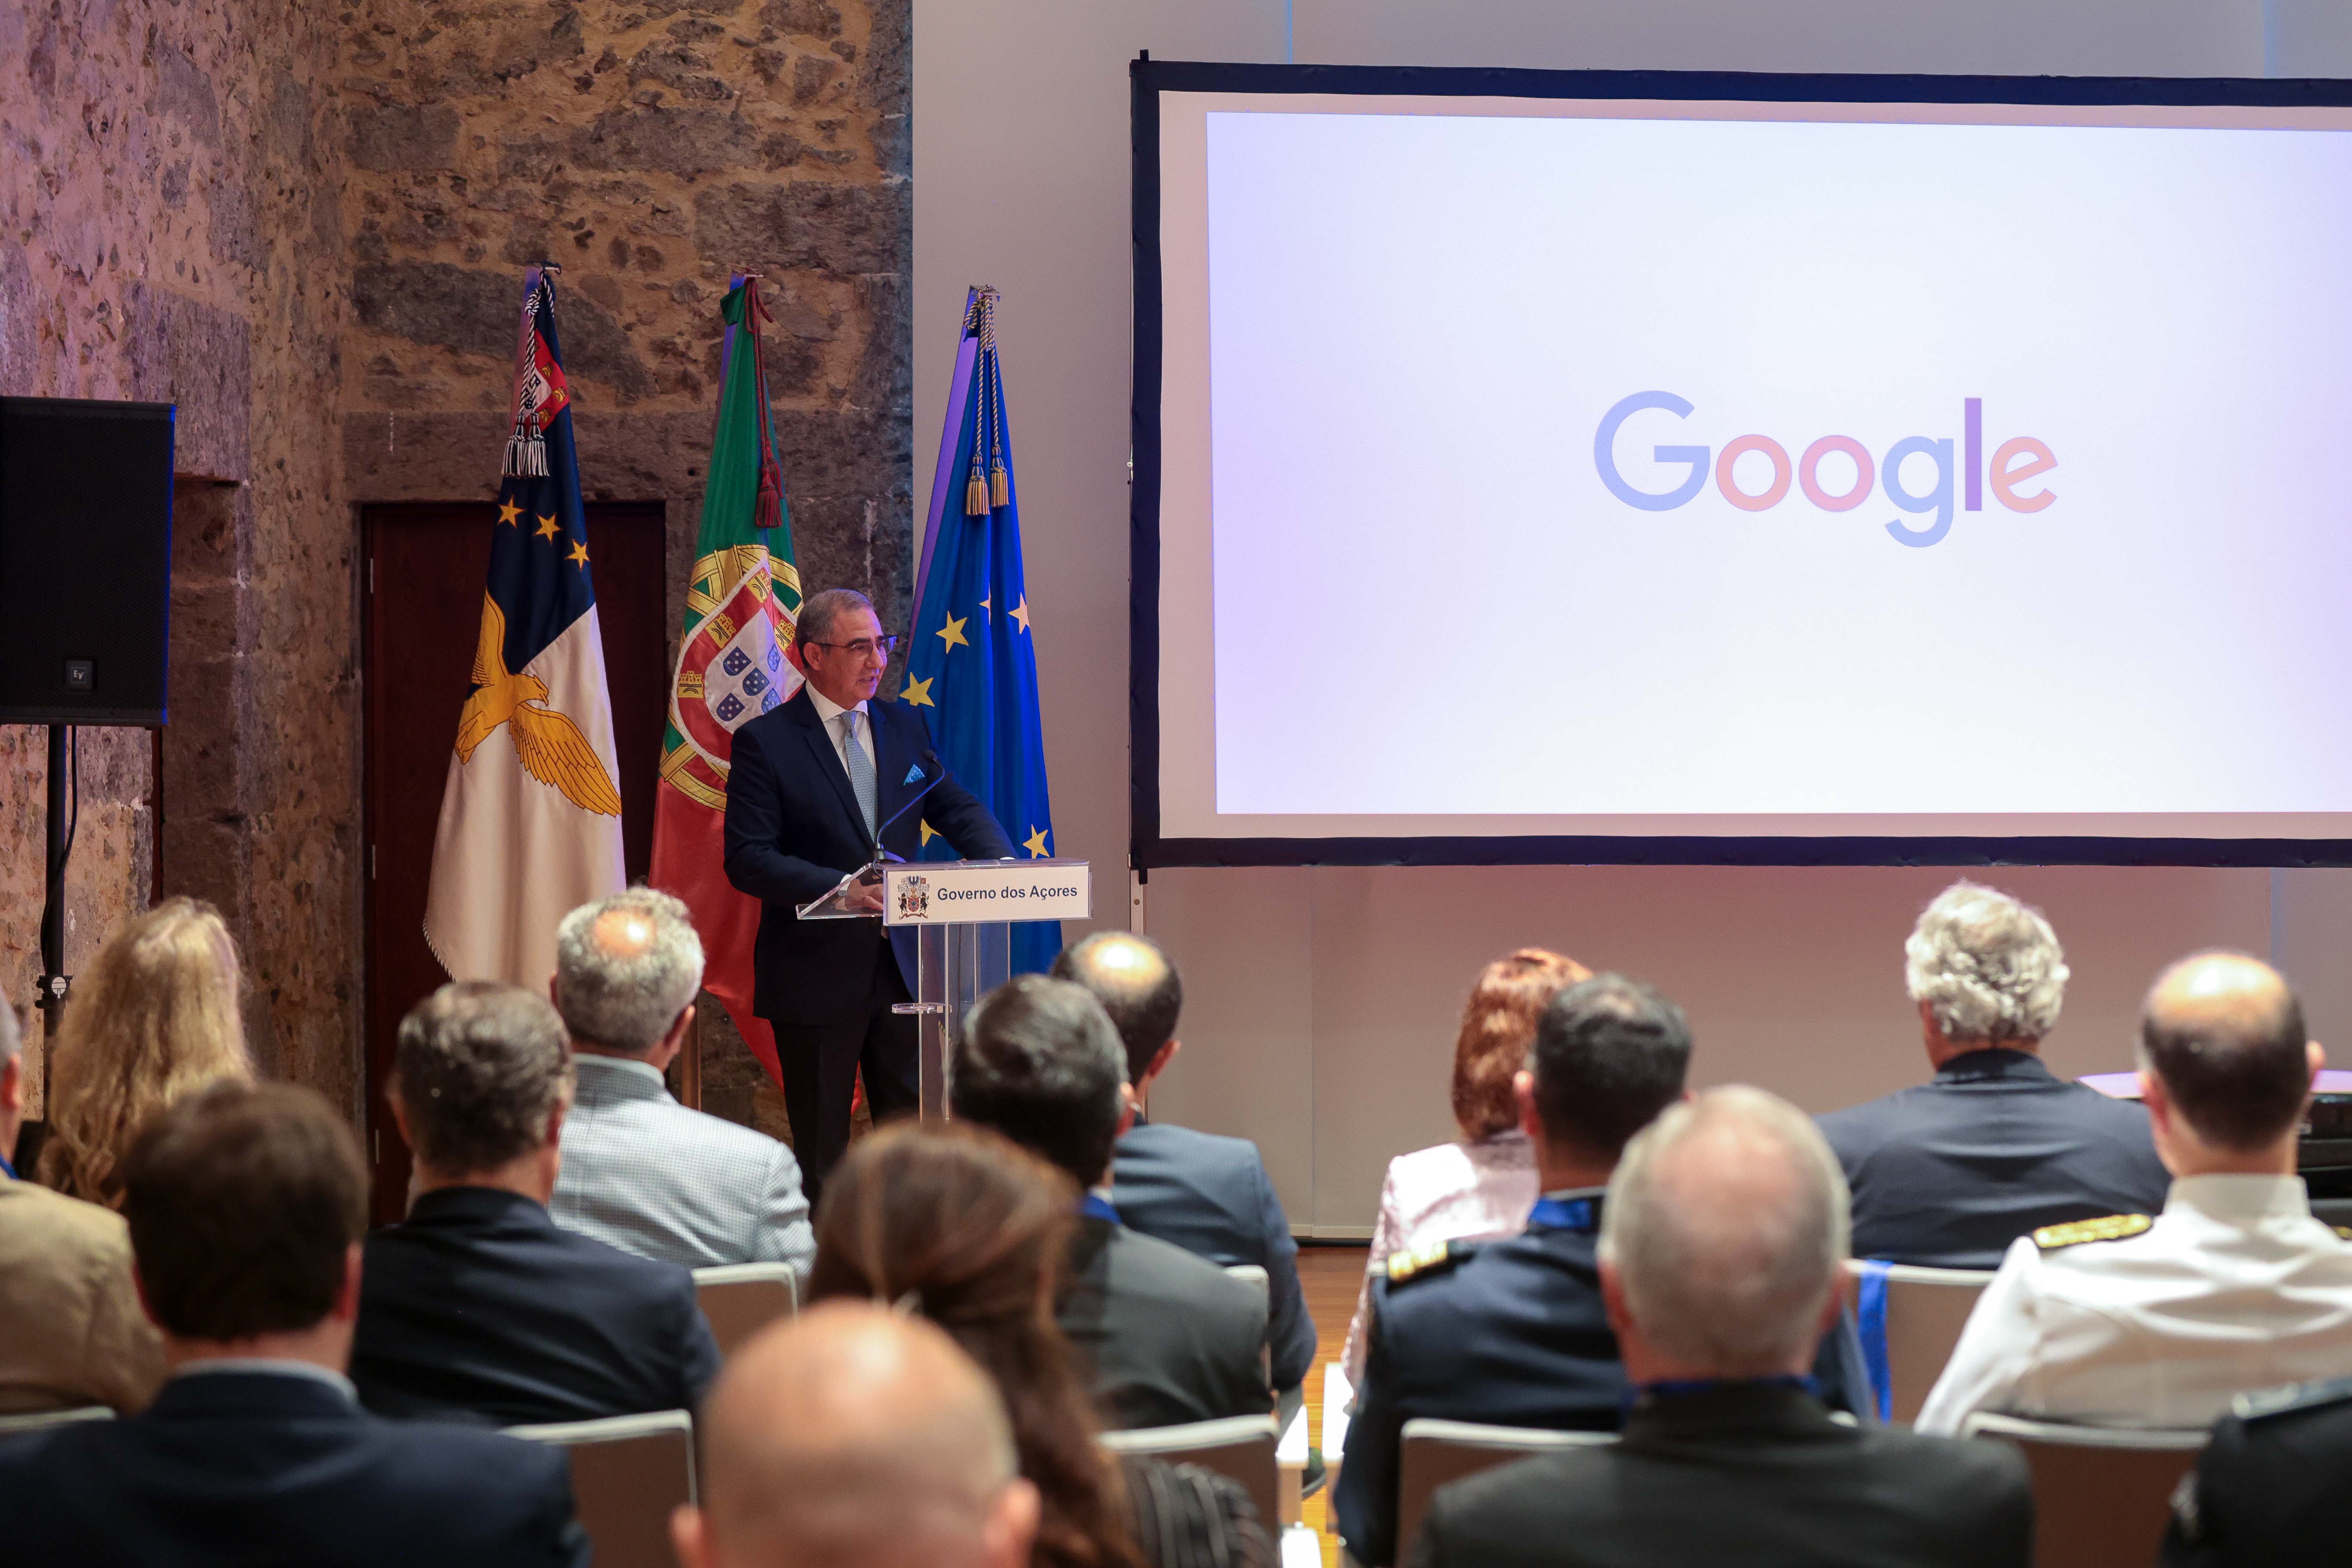 Cabo da Google é “projeto de futuro” com centralidade nos Açores, realça José Manuel Bolieiro